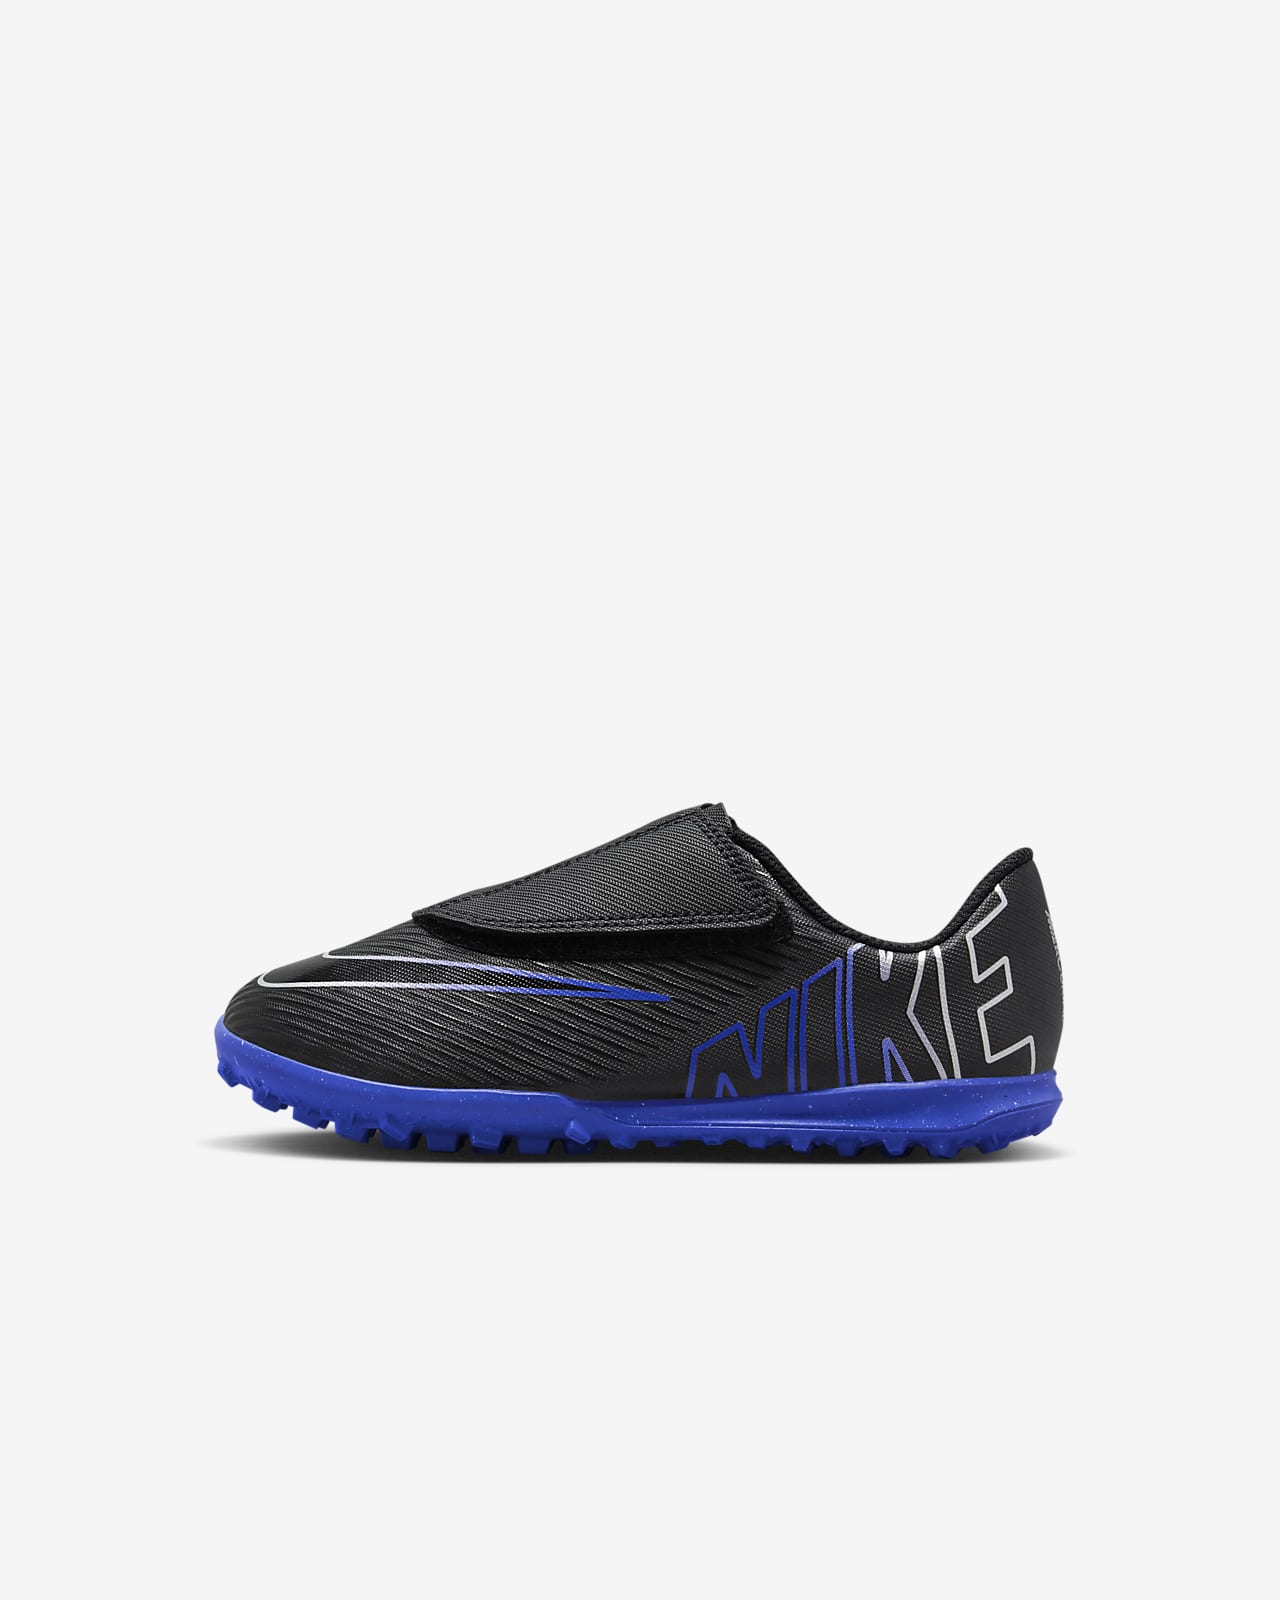 Chaussure de foot basse pour surface synthétique Nike Jr. Mercurial Vapor 15 Club pour enfant